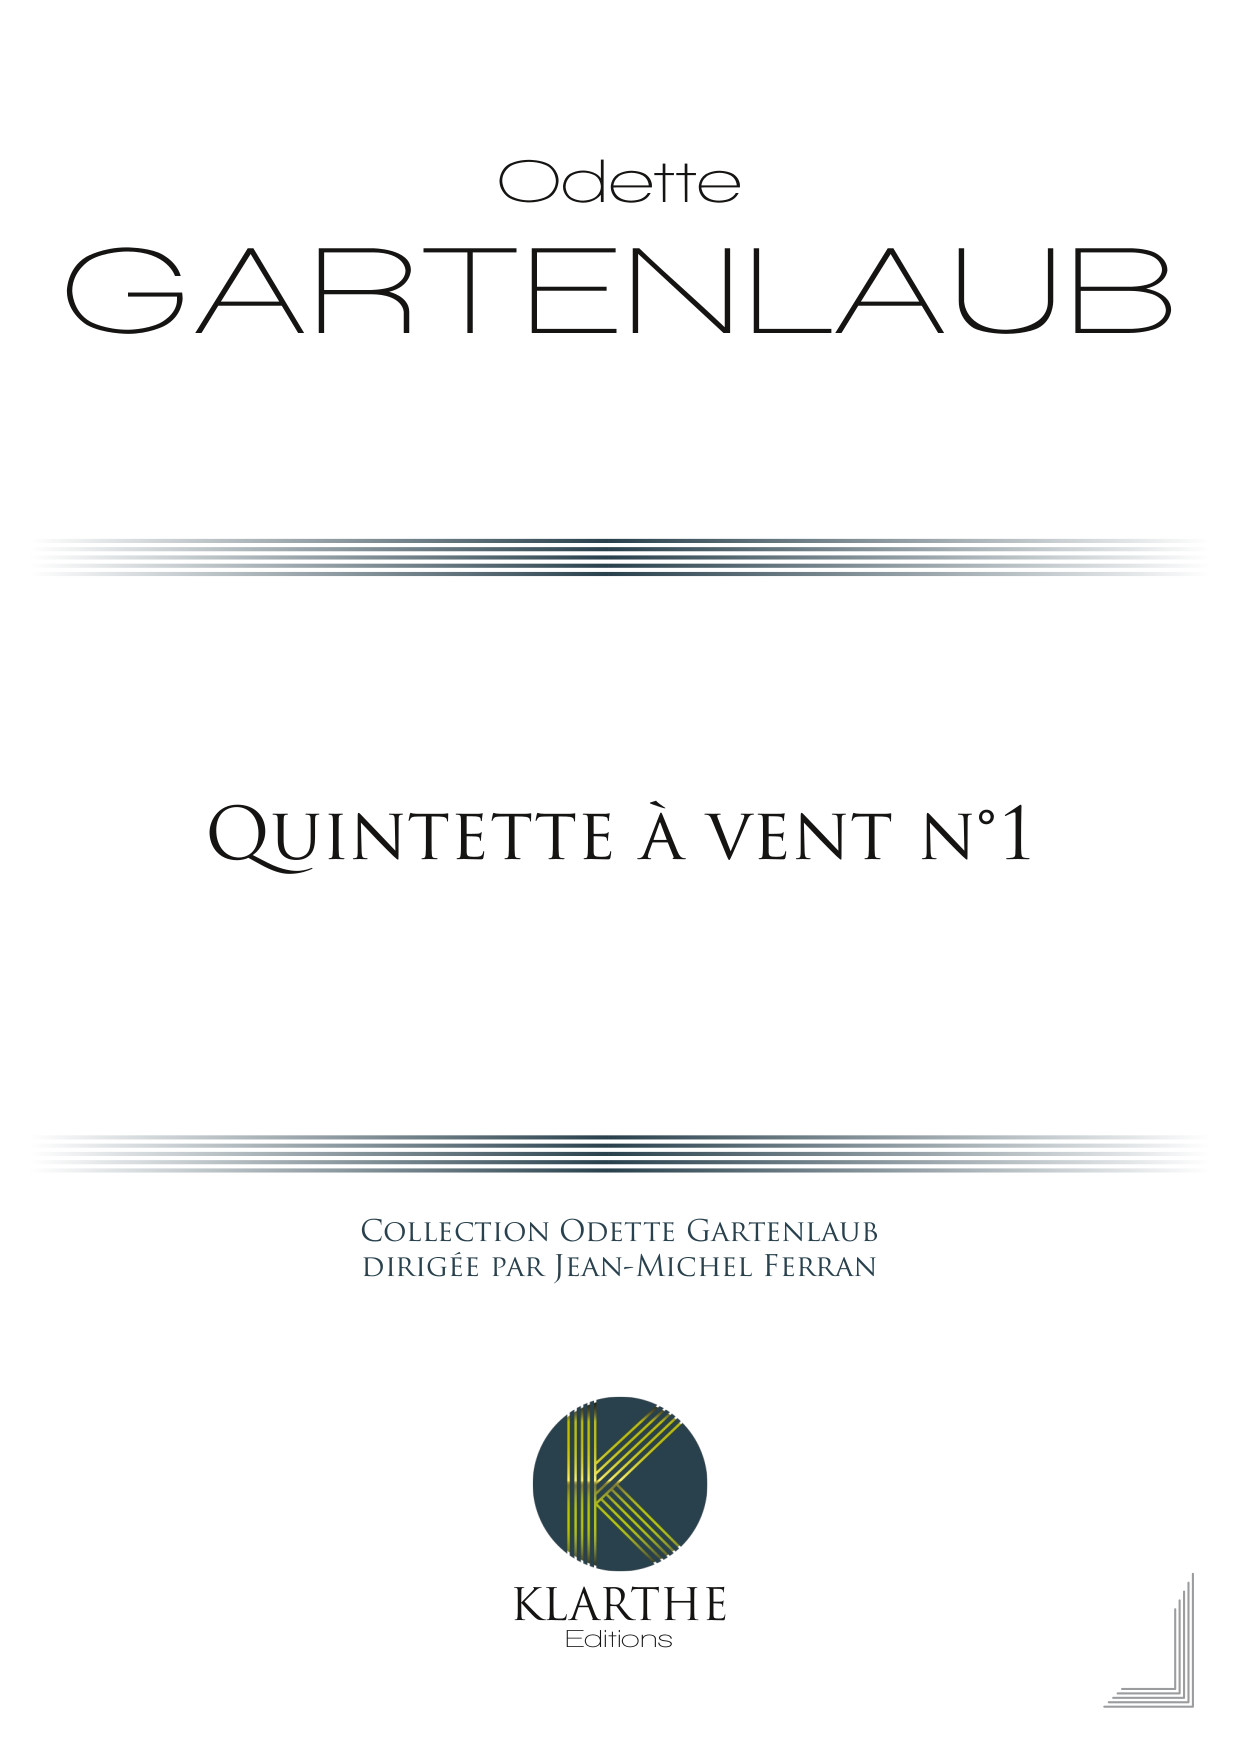 Quintette � vent n�1 (GARTENLAUB ODETTE)